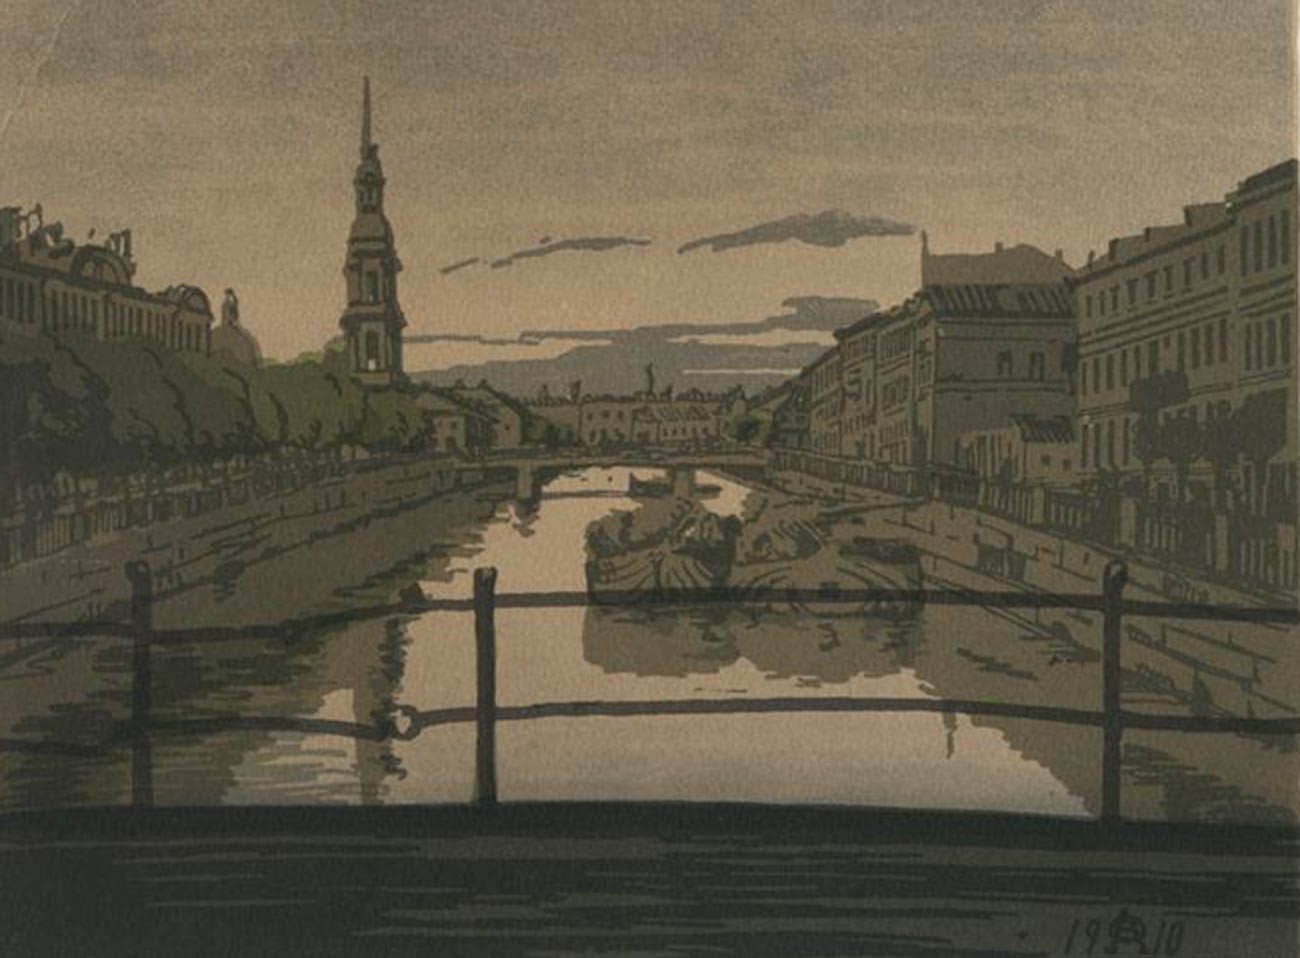 ペテルブルクのクリュコフ運河、1910年